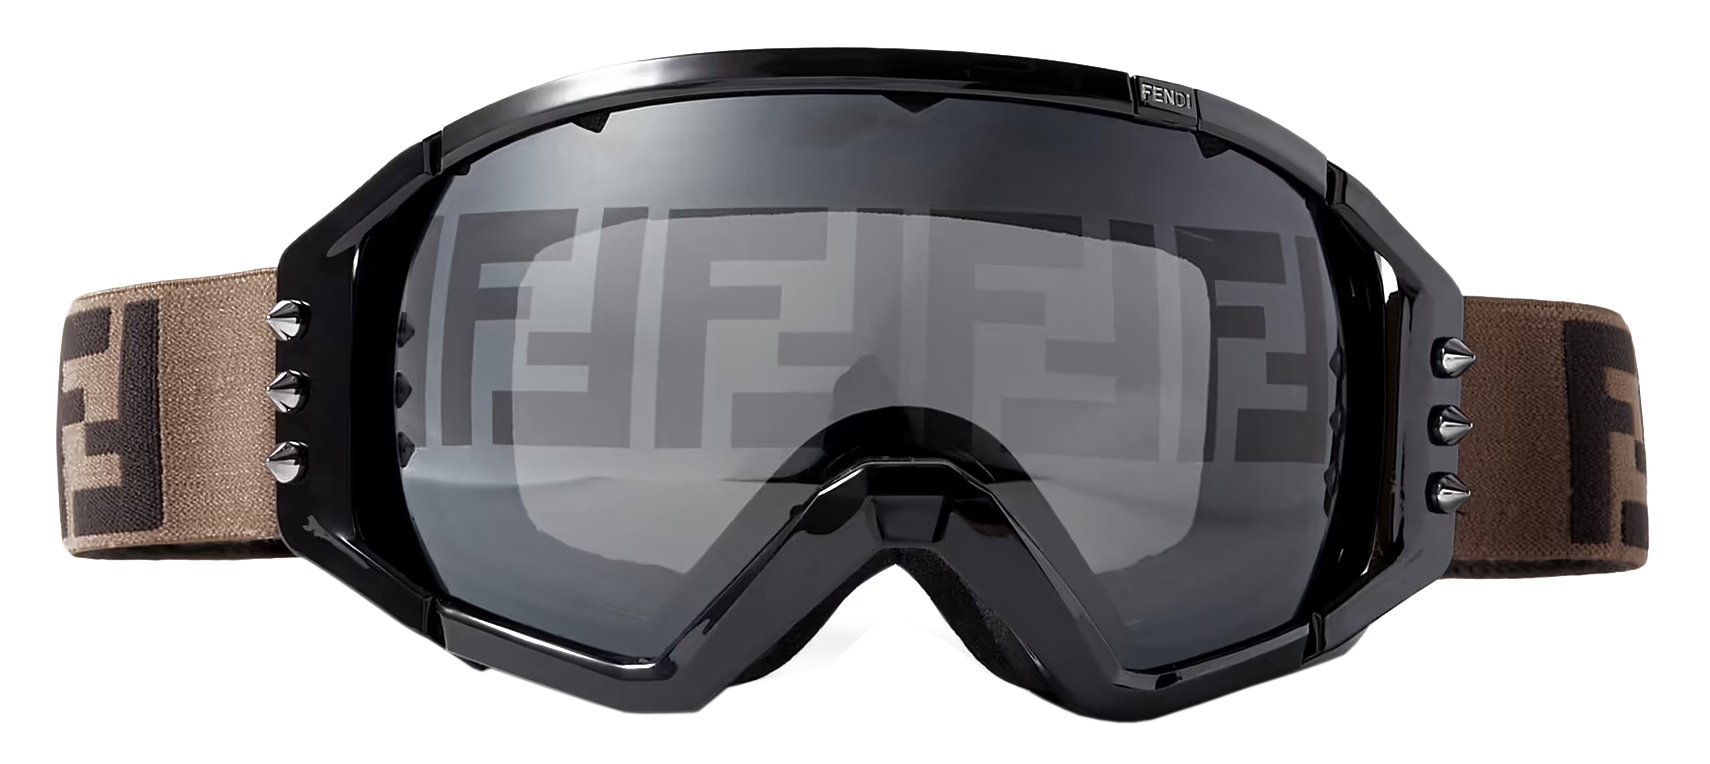 Farfetch Fendi Fendirama Ski Goggles - Farfetch